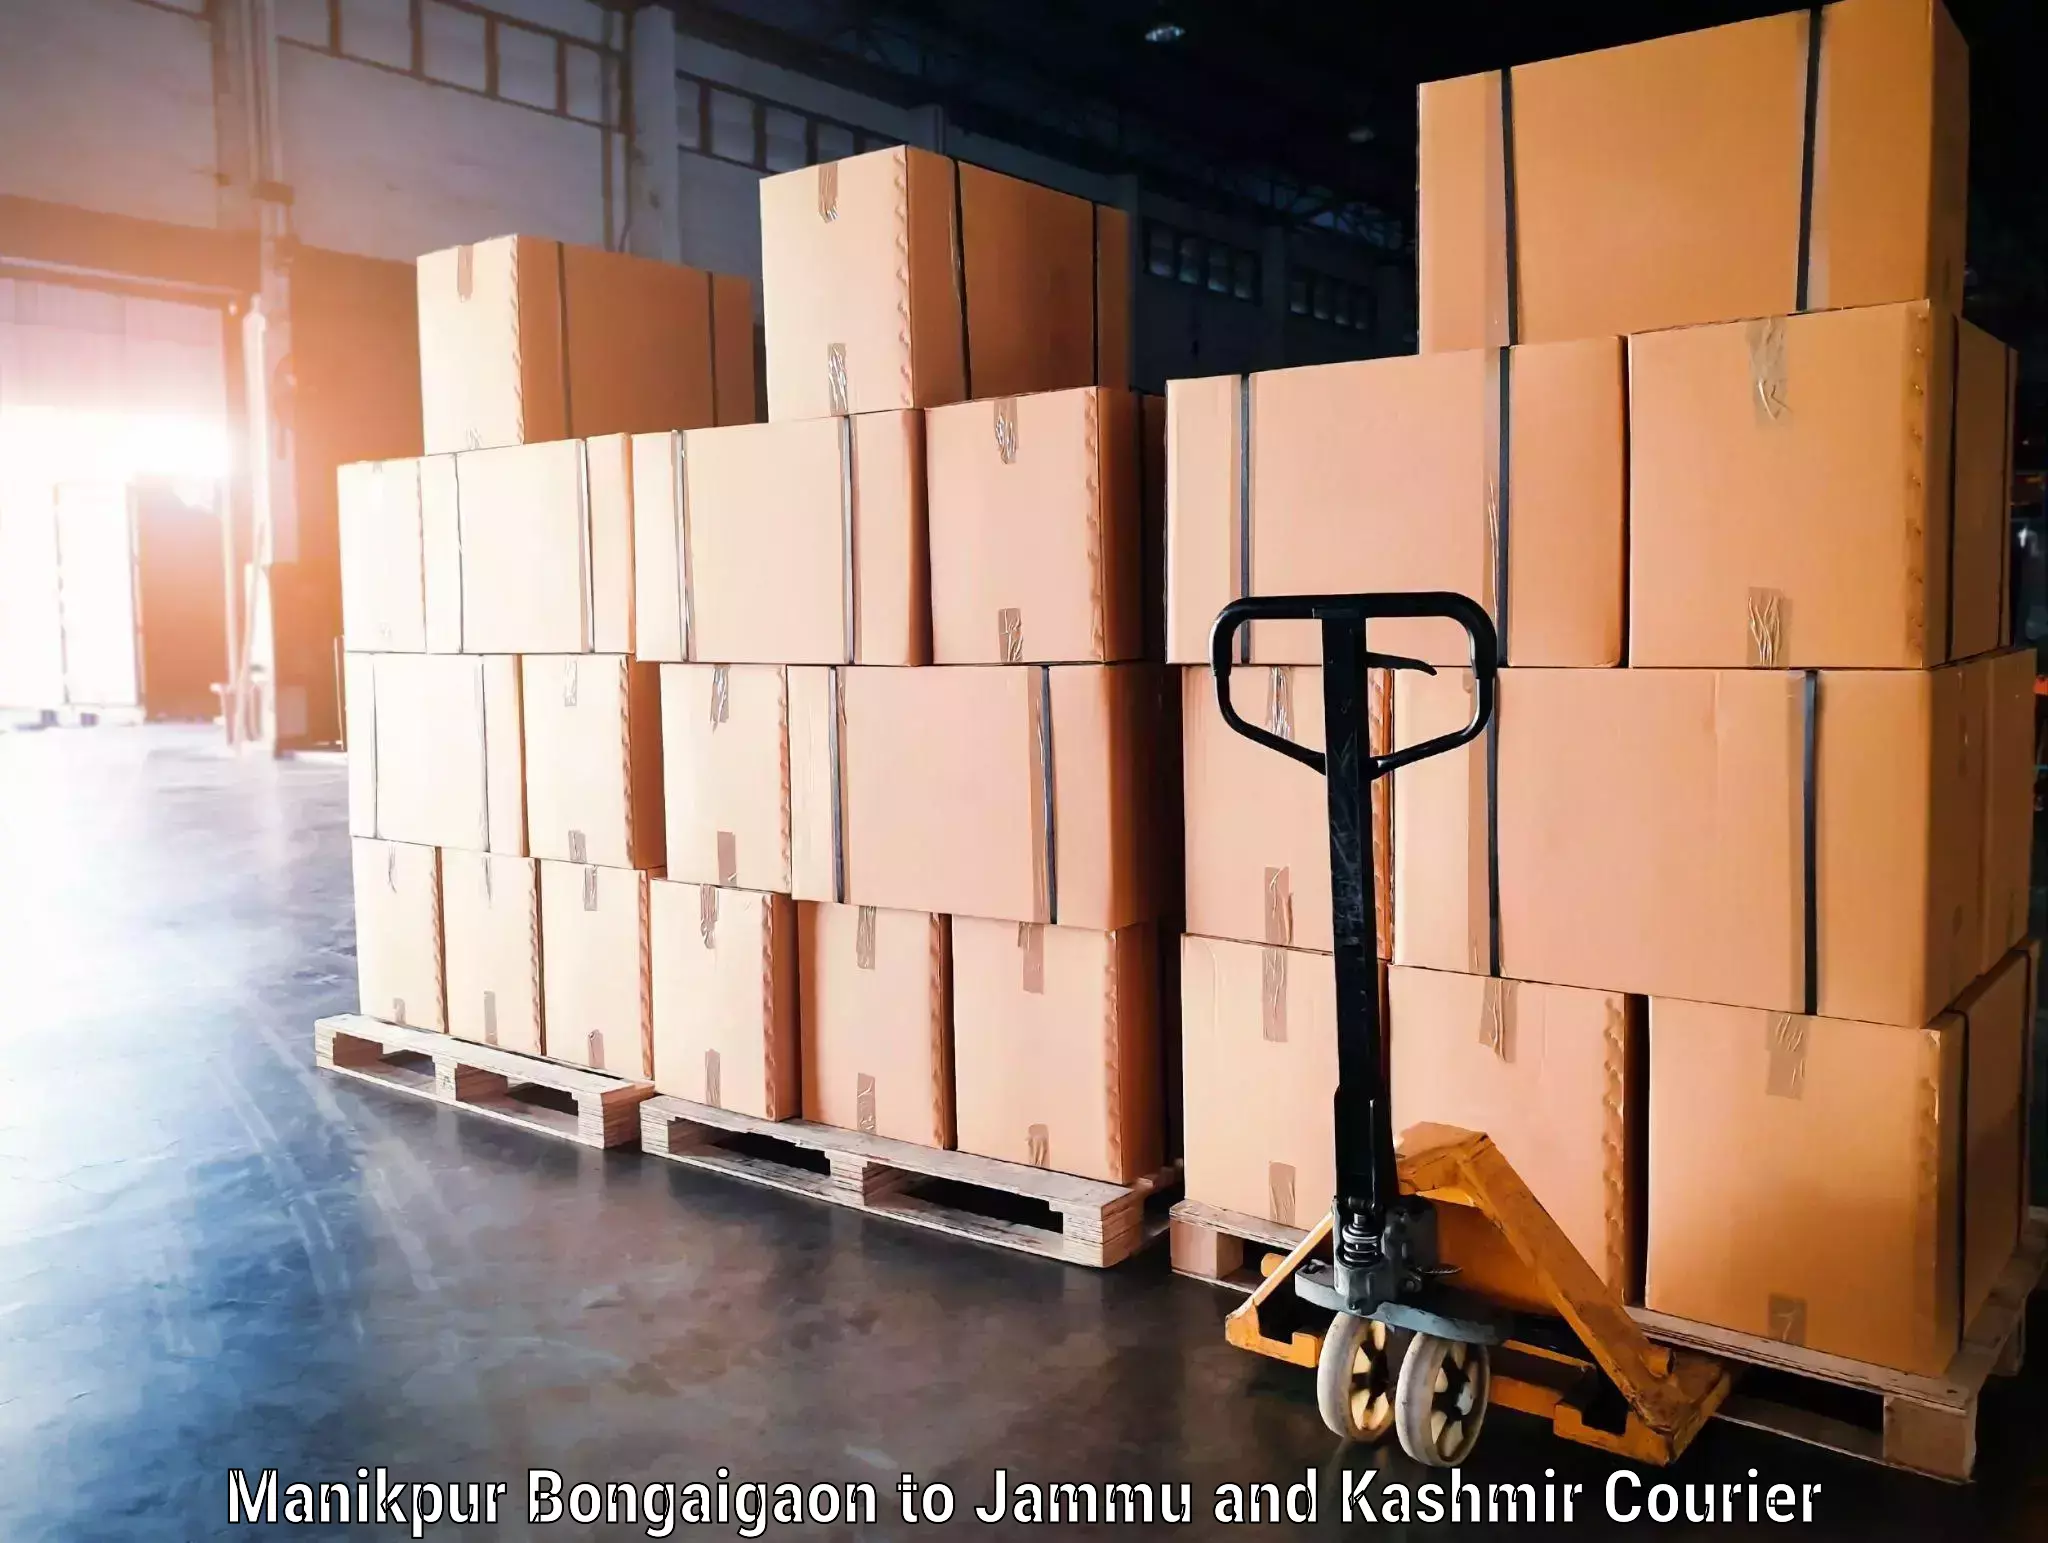 Luggage delivery network Manikpur Bongaigaon to Hiranagar